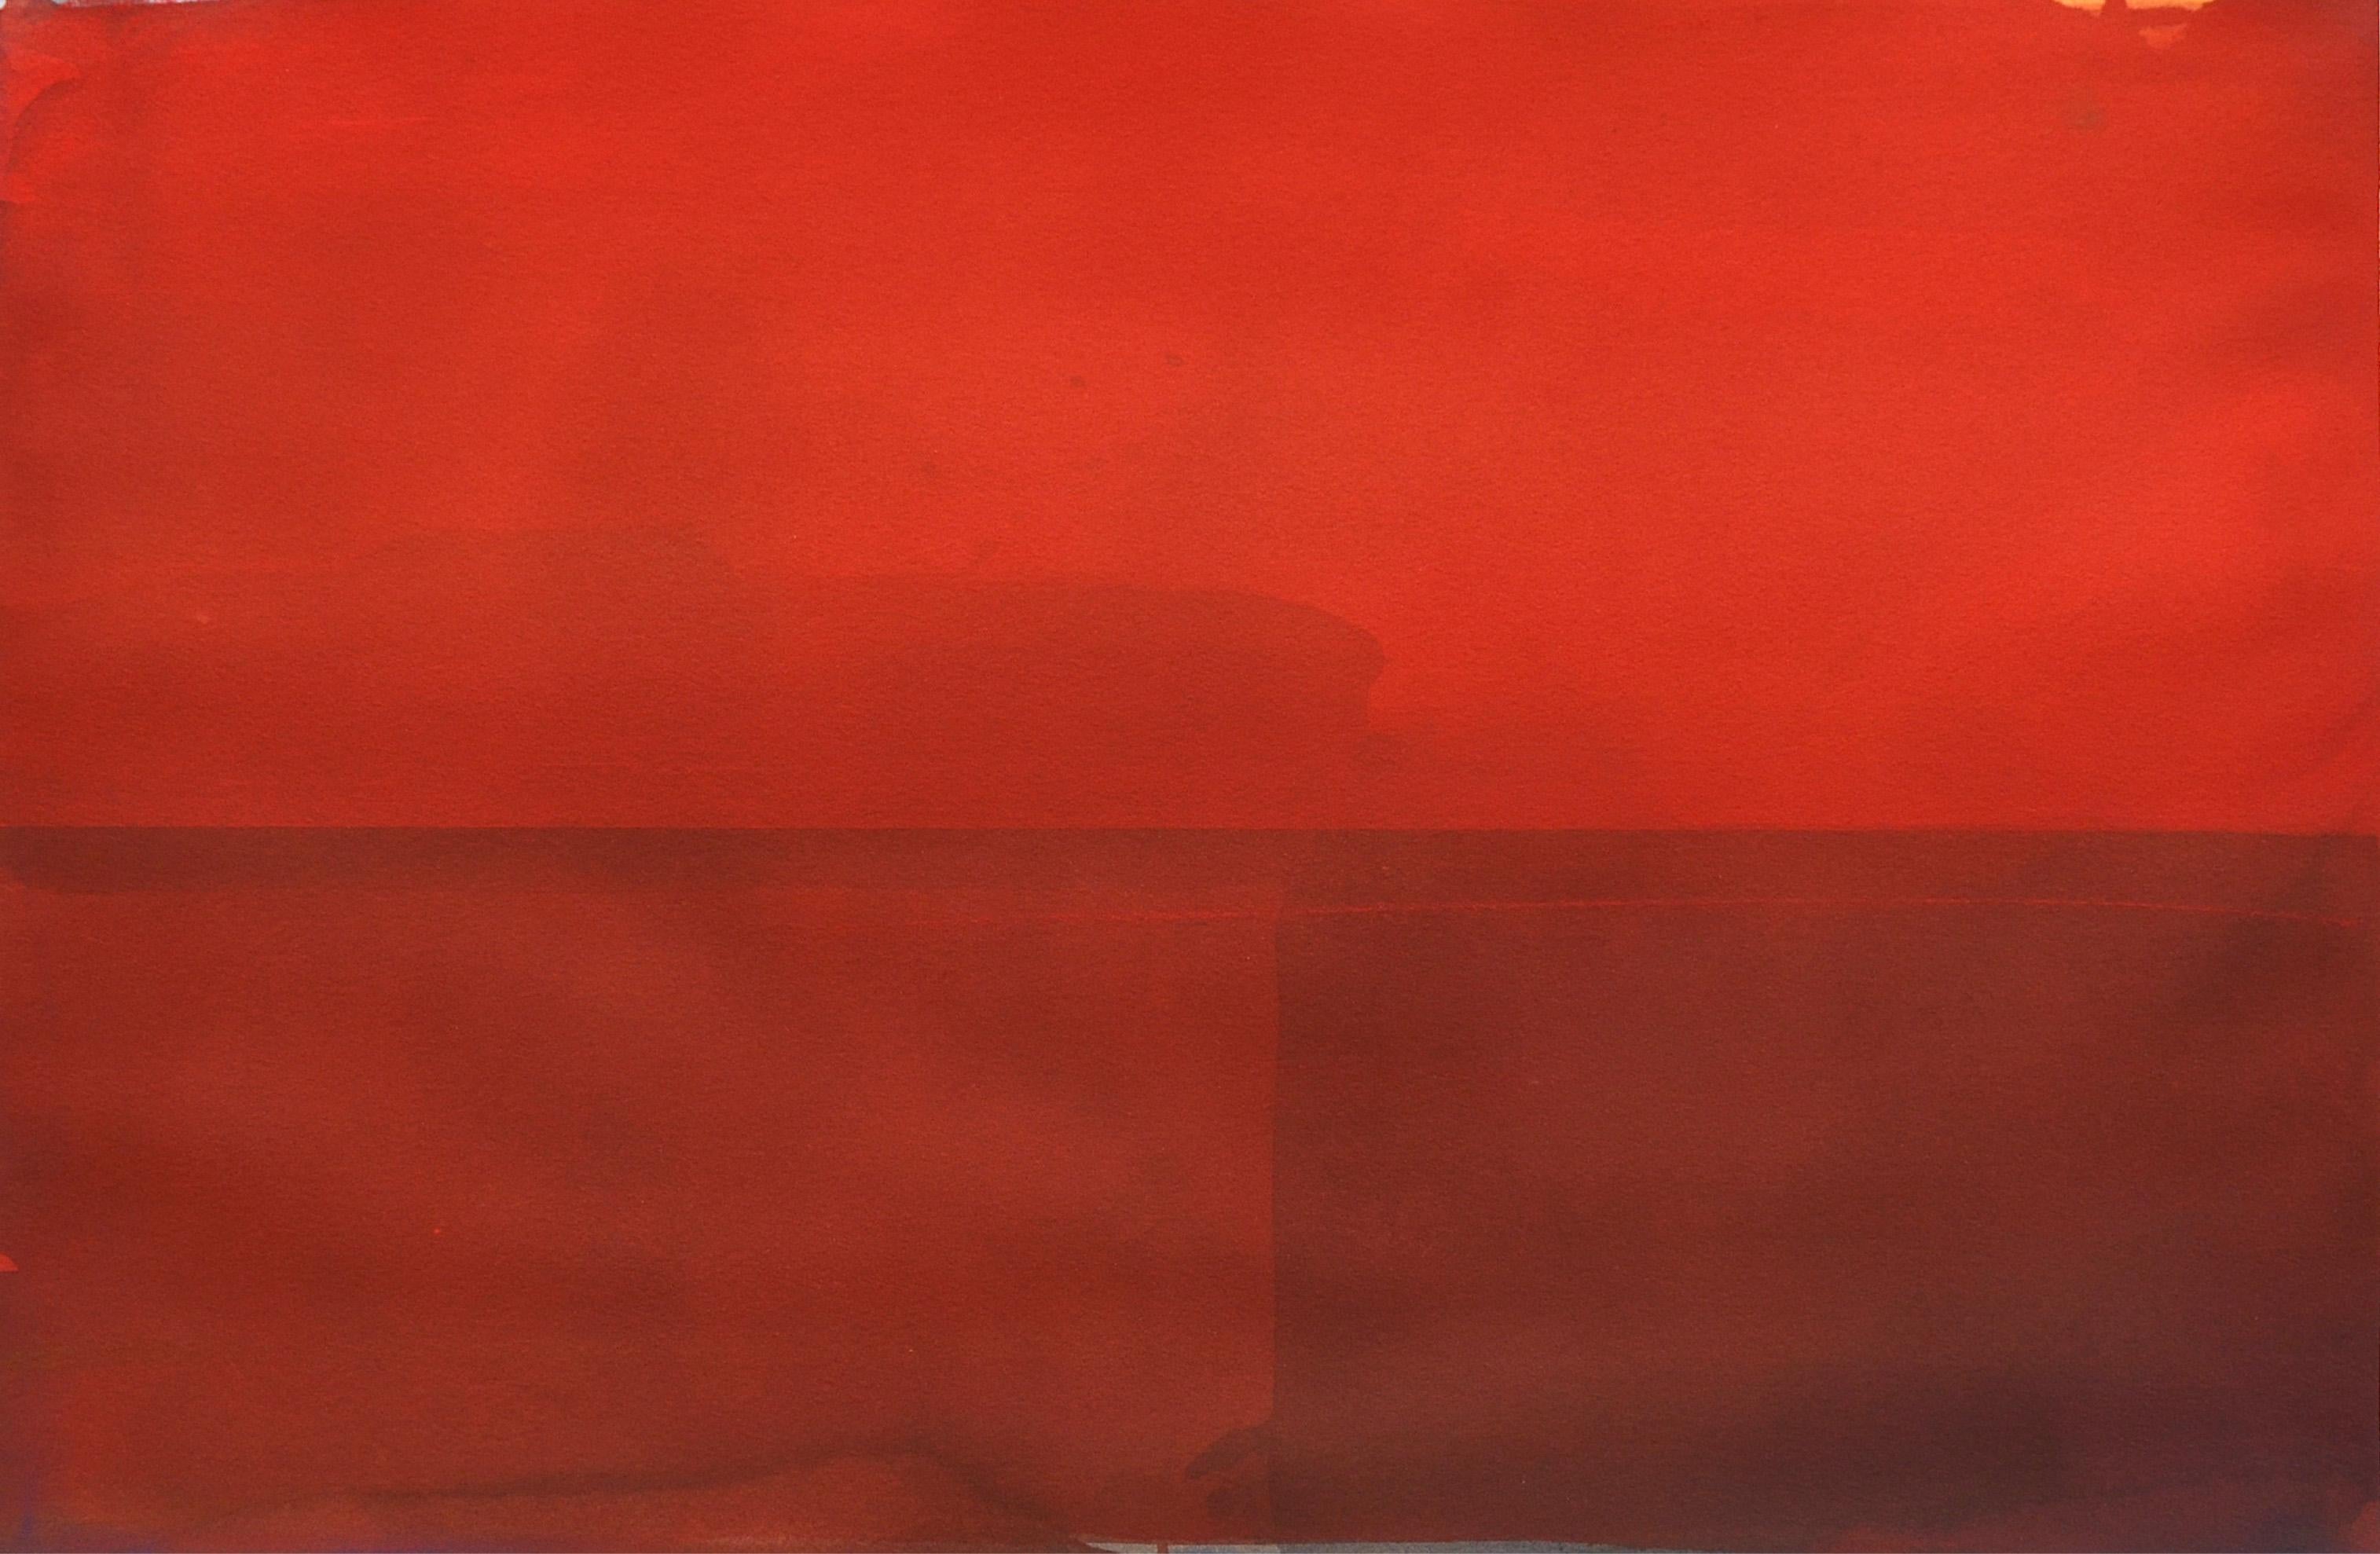 Daniel Brice
Eau - Rouge, 2020
aquarelle sur papier
16 x 25 en taille d'image
21 x 29 en format papier
(brice142)

Cette aquarelle abstraite originale sur papier de Daniel Brice présente des nuances de rouge audacieuses peintes dans des mouvements